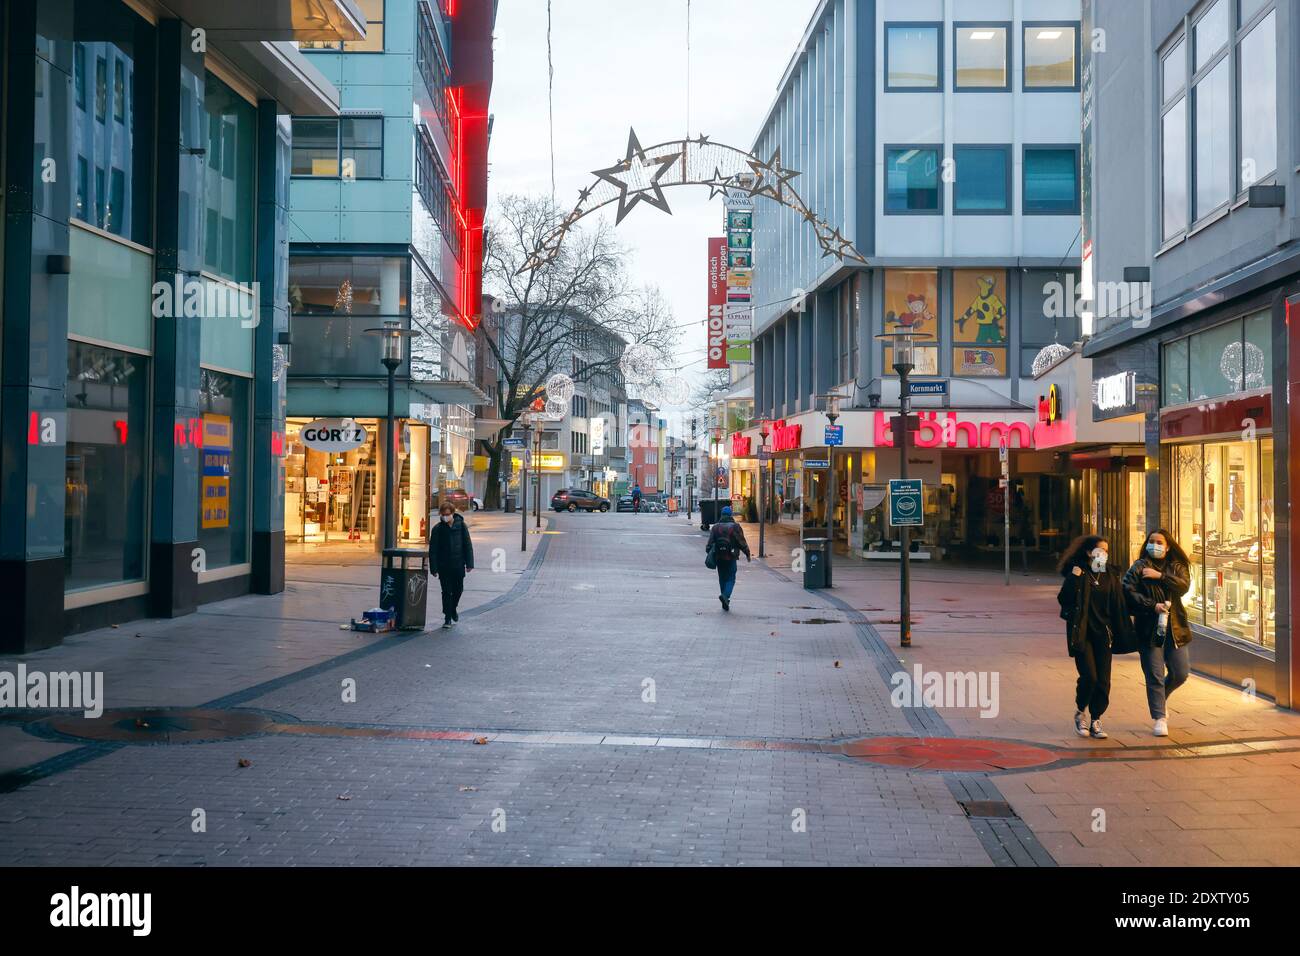 Essen, région de la Ruhr, Rhénanie-du-Nord-Westphalie, Allemagne - centre-ville d'Essen en temps de crise de Corona pendant le deuxième confinement la veille de Noël Banque D'Images